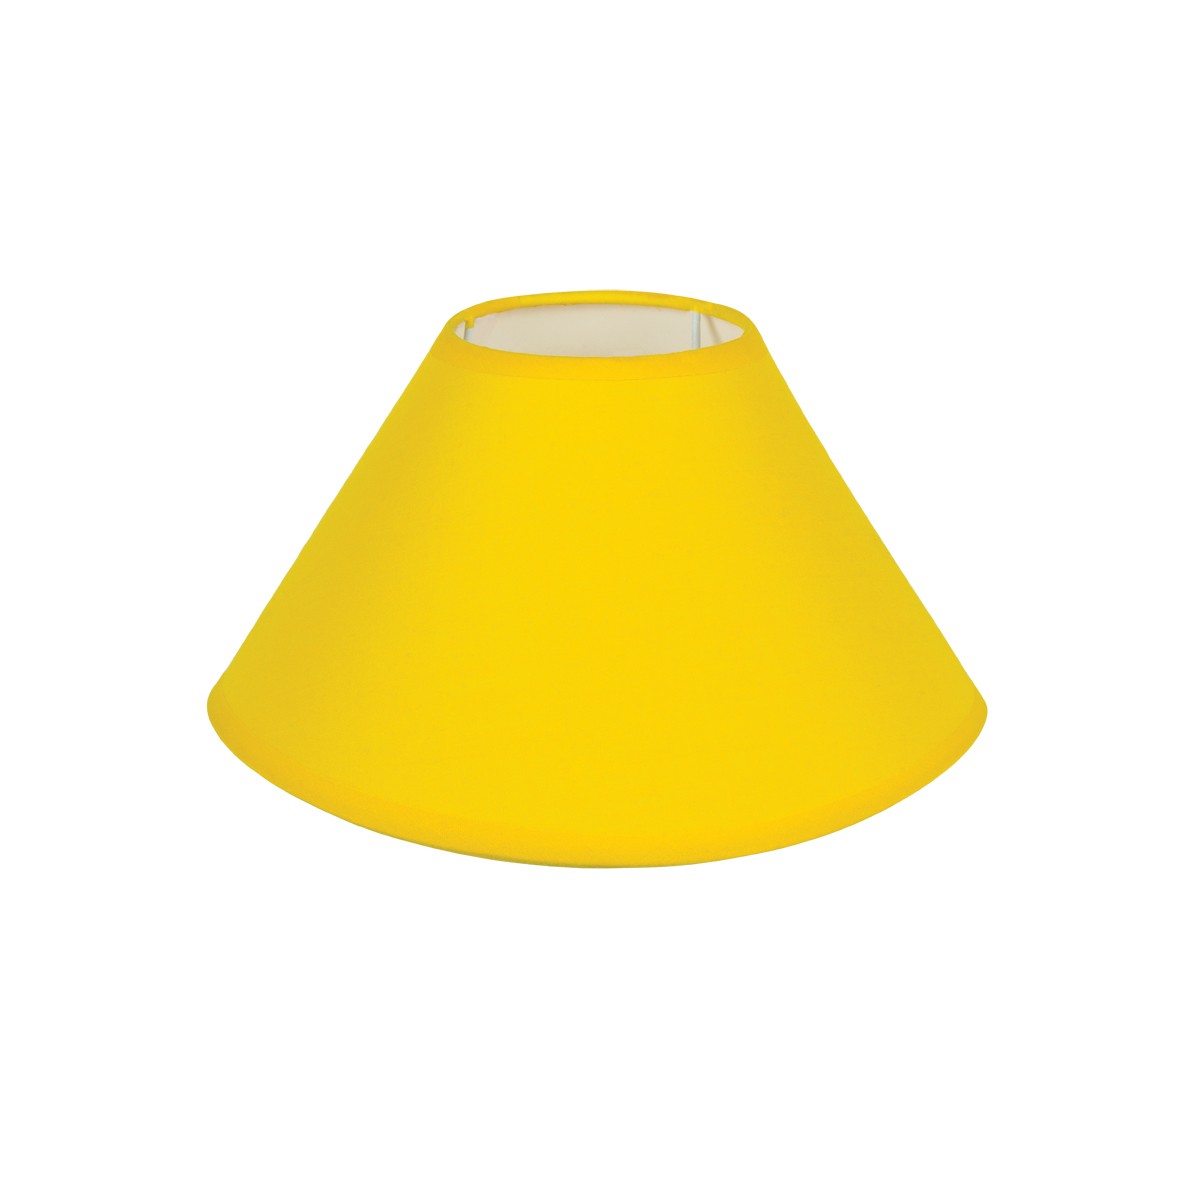 Καπέλο Μονόχρωμο Στρογγυλό Φ30cm Κάτω Πλευρά -Σε Κίτρινο Χρώμα        VK/E27/E14/D30/Y